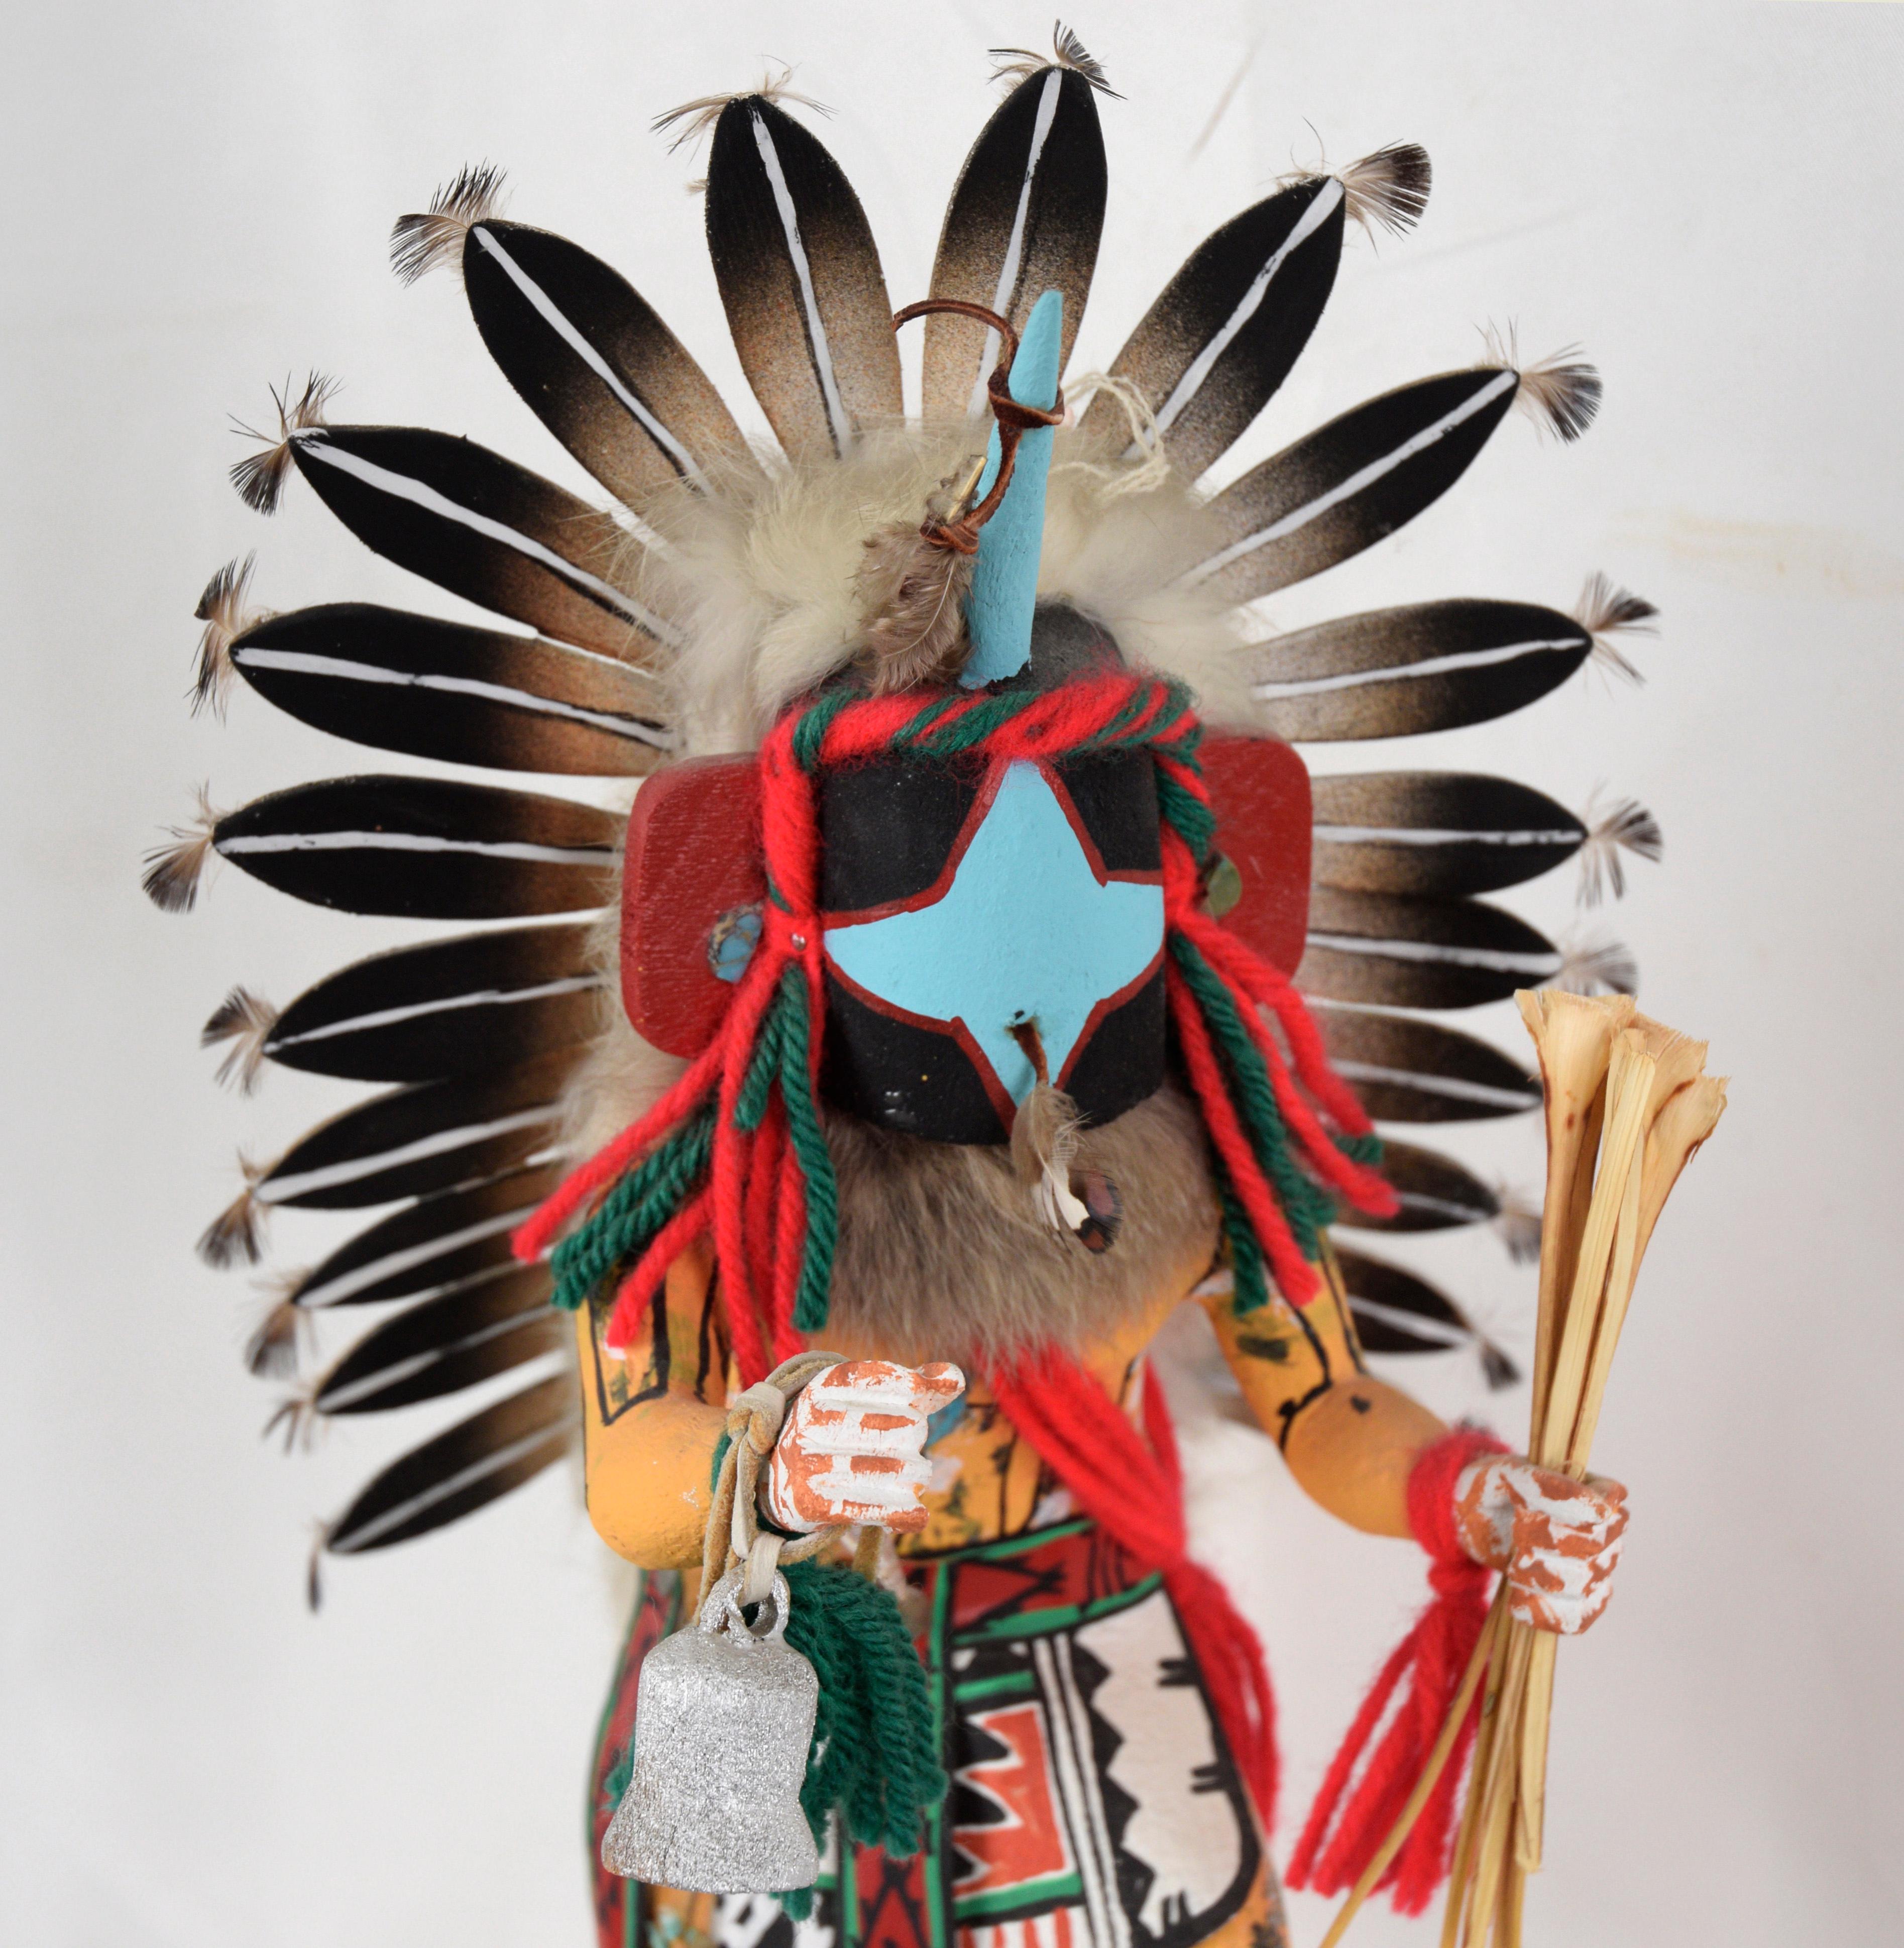 Chasing Star beim Tanz - Kachina-Puppe von Rena Jean (Whitehorse)

Leuchtend bemalte, dynamische Skulptur von Rena W. Jean (Rena Whitehorse Jean) Hopi. Die Figur ist in kunstvolle Kleidung gekleidet und hält eine Glocke und ein Bündel Yucca-Stöcke